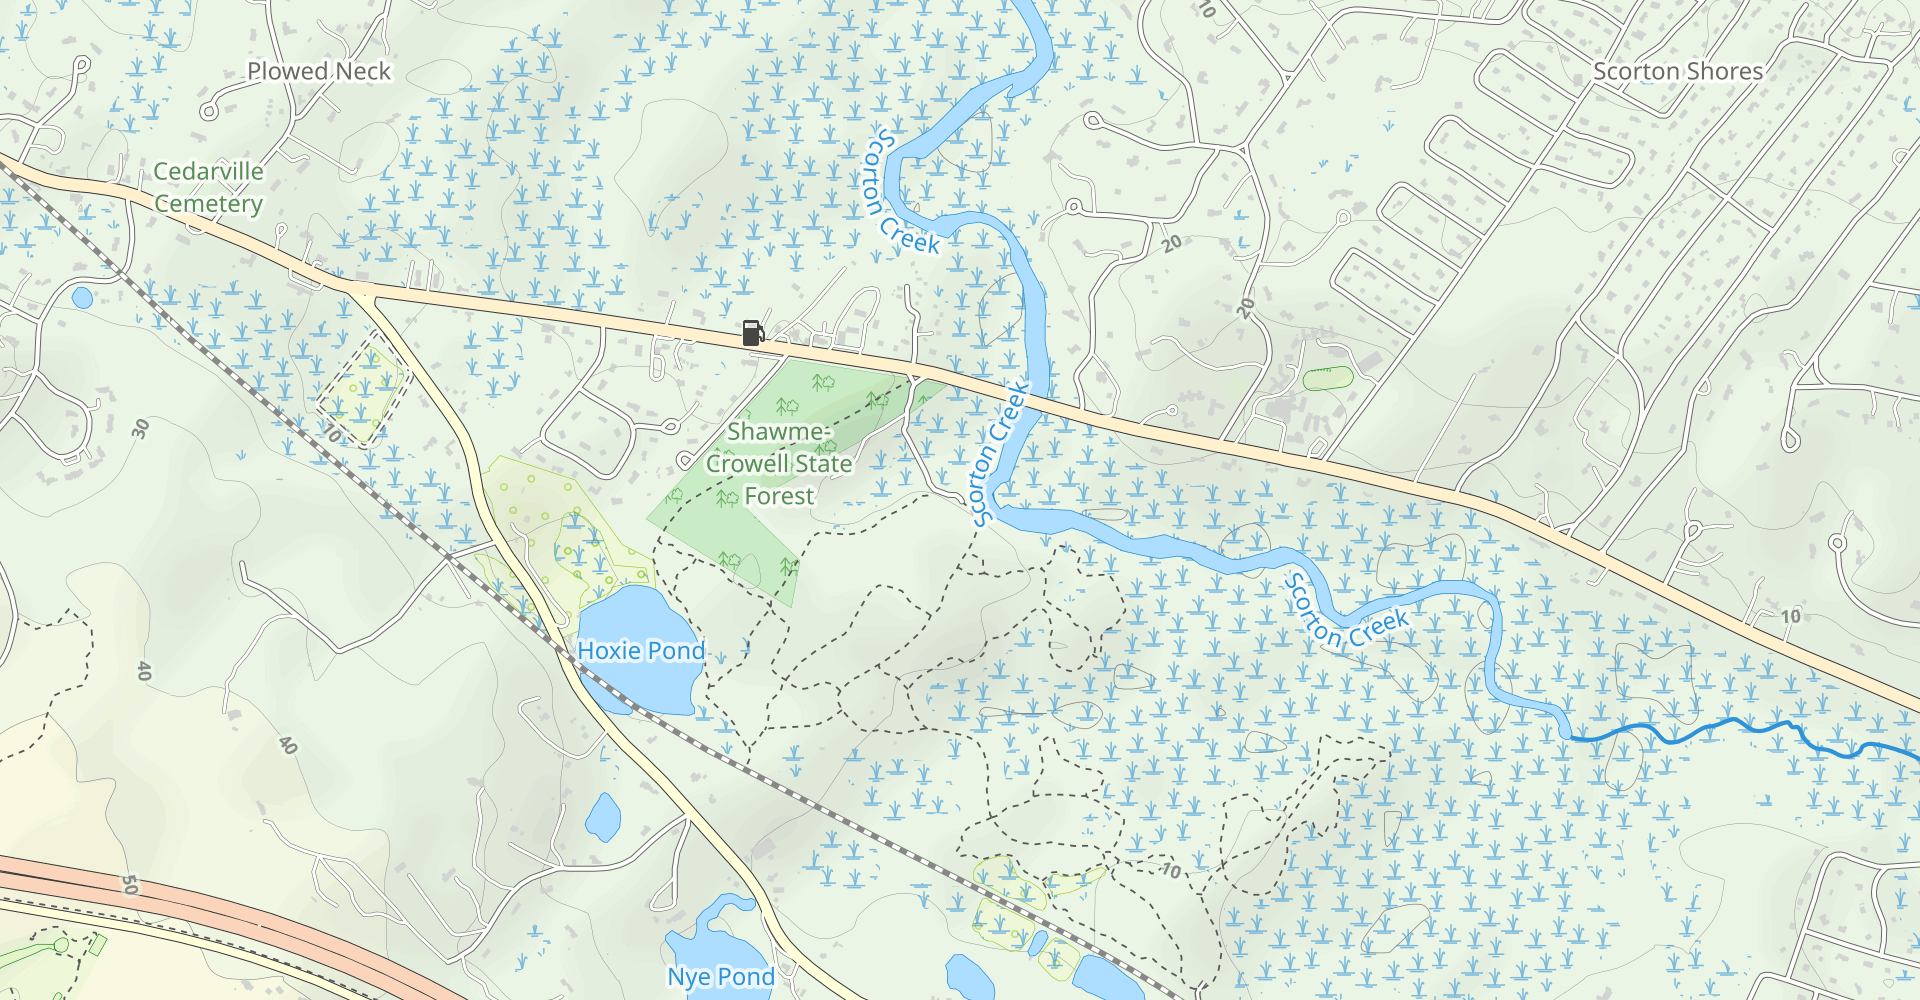 Scorton Creek and Hoxie Pond Loop